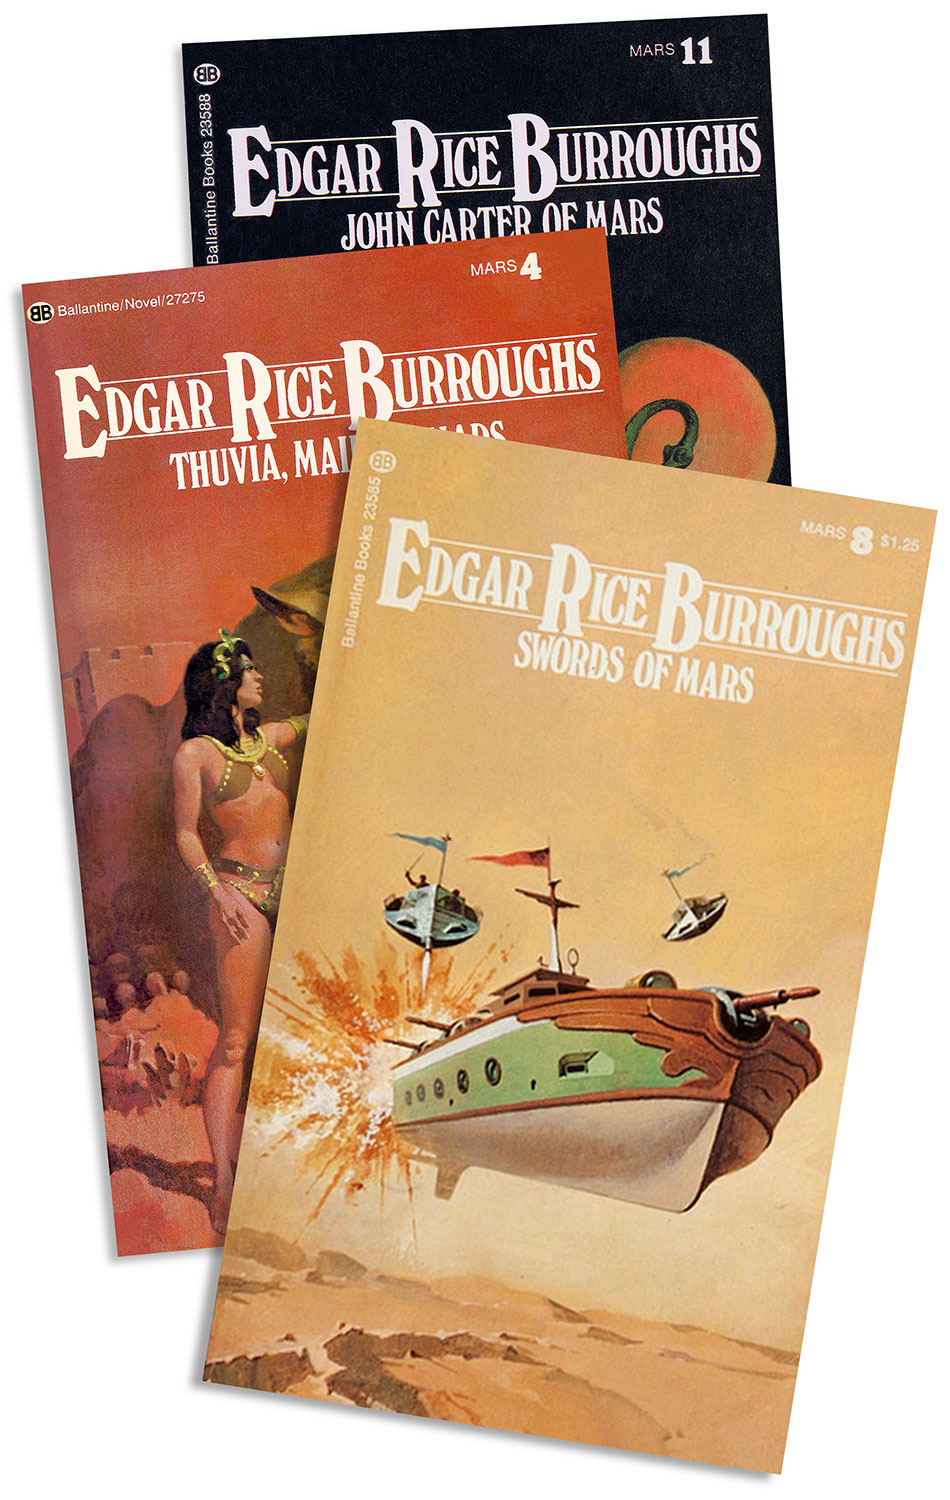 Edgar Rice Burroughs' Mars series